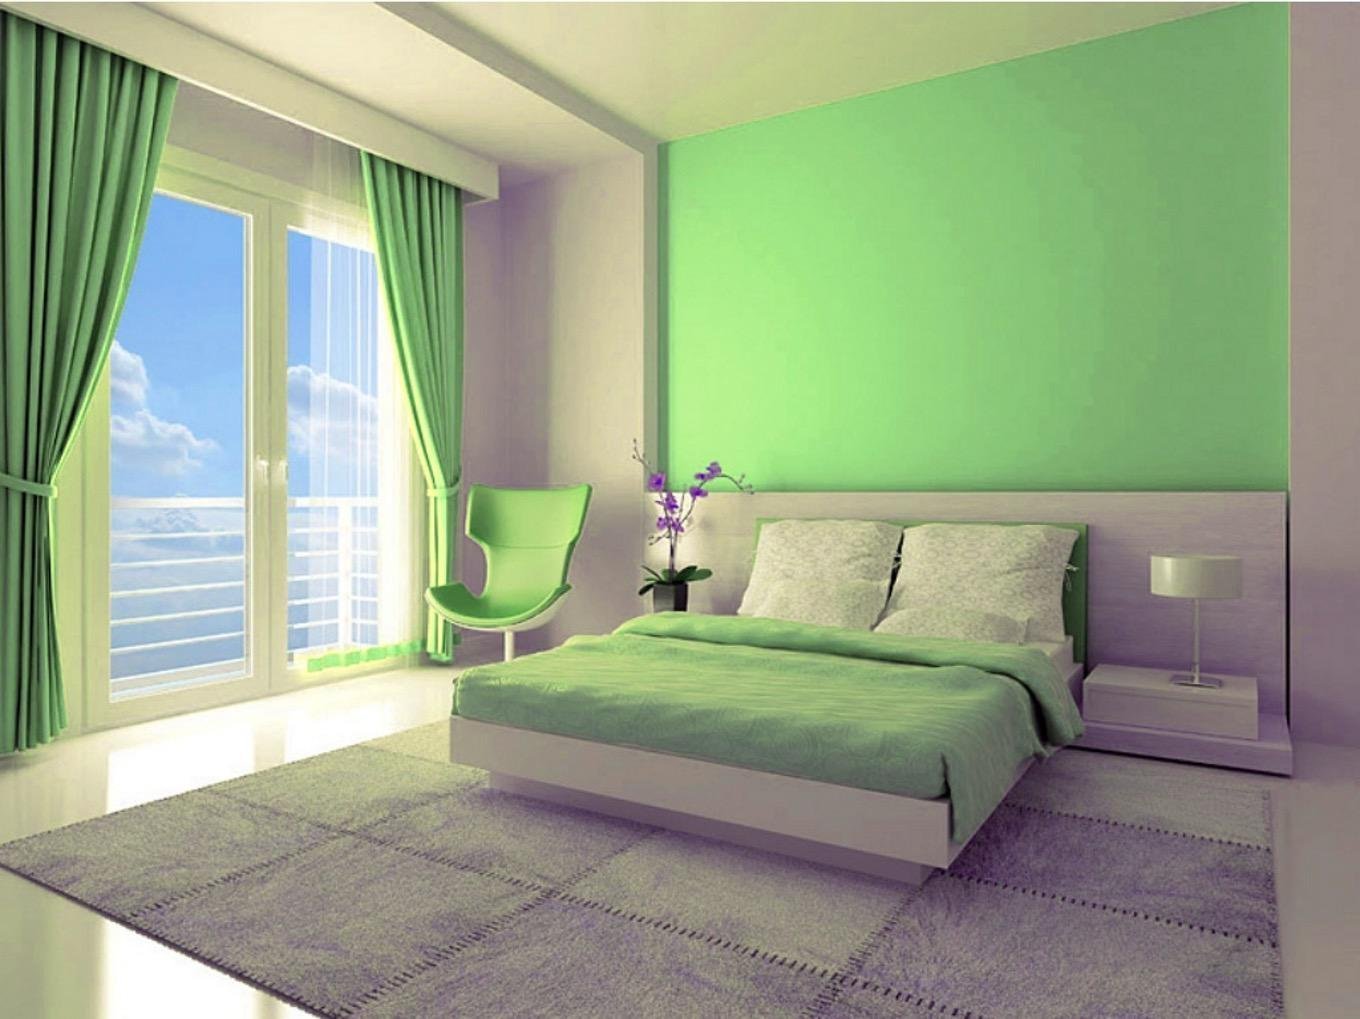 Обои в зеленых тонах. Спальня в салатовых тонах. Зеленая спальня. Спальня в салатовом цвете. Салатный цвет в интерьере.